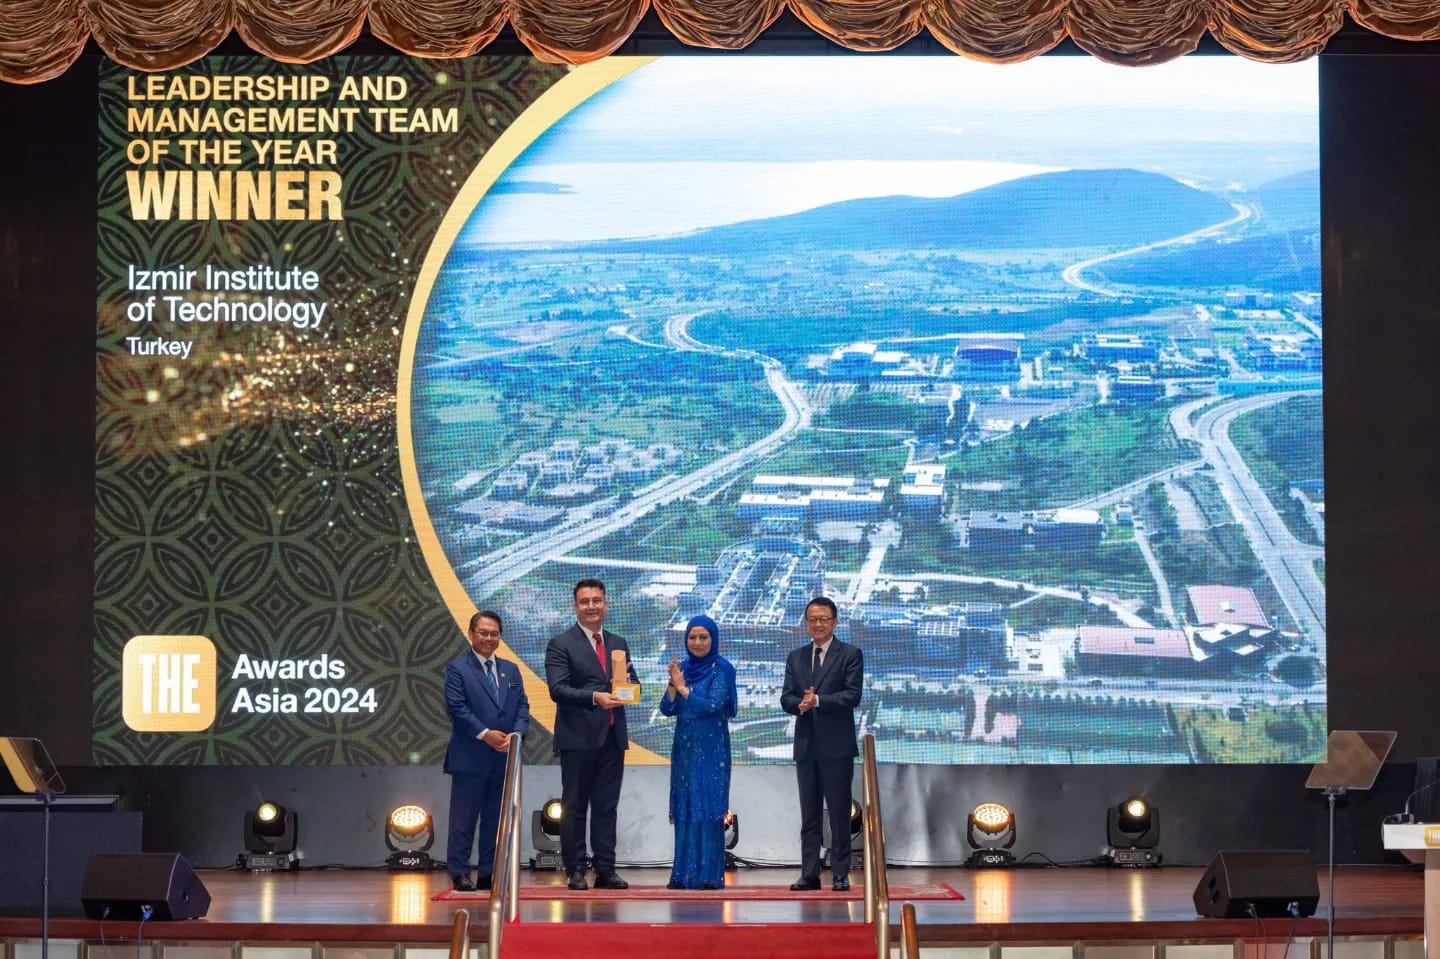 İYTE, THE Awards Asia 2024’te “Yılın Liderlik ve Yönetim Ekibi Ödülü”nü Kazandı